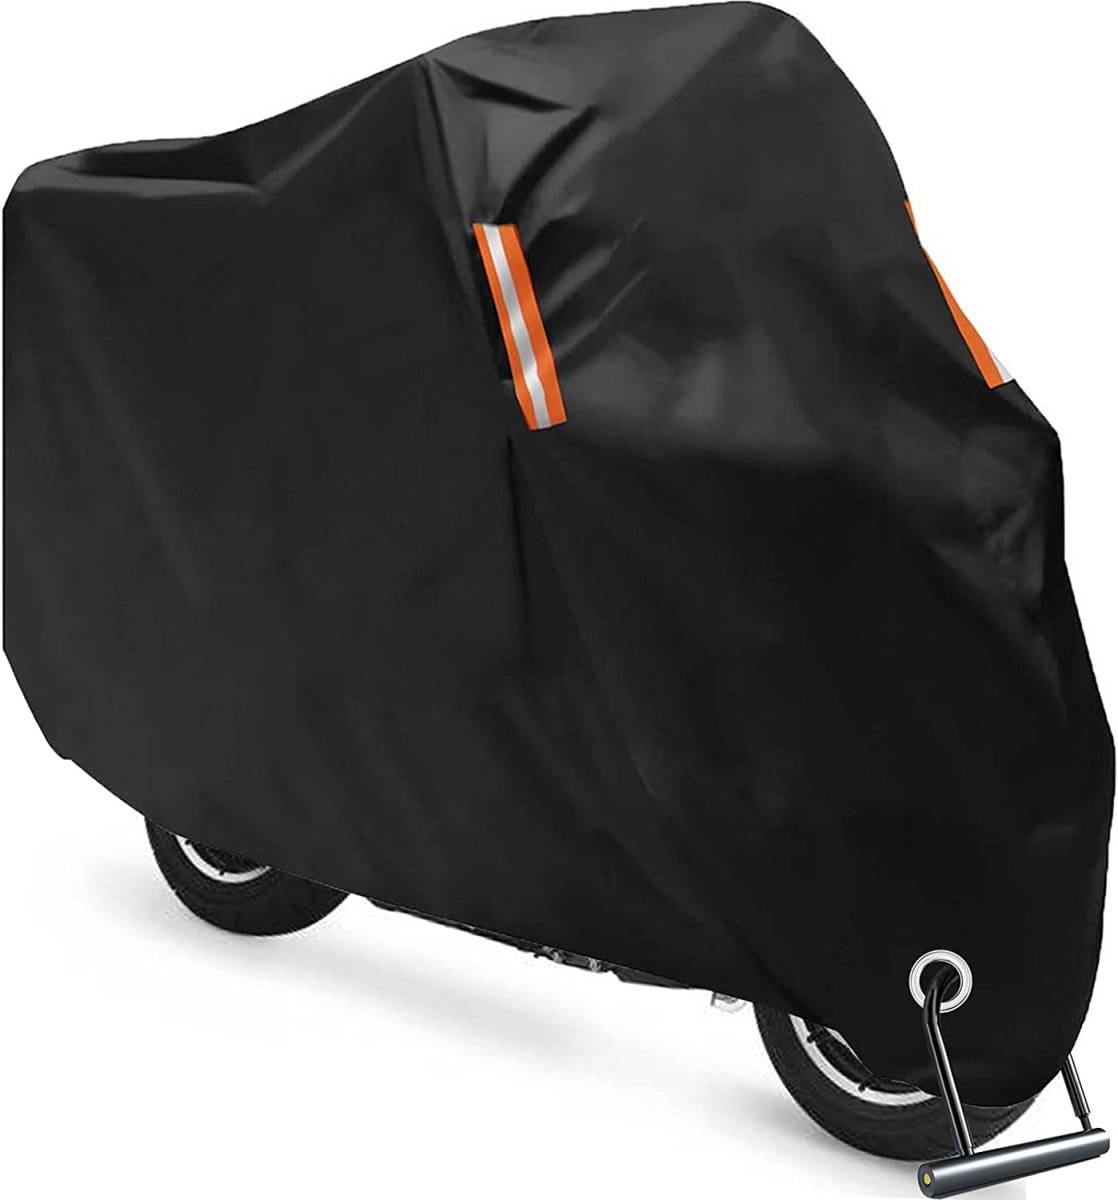 [ включая доставку ]( черный ) Softclub мотоциклетный чехол толстый 420D оскфорд материалы одиночный машина покрытие водонепроницаемый защита от снега крепкий 